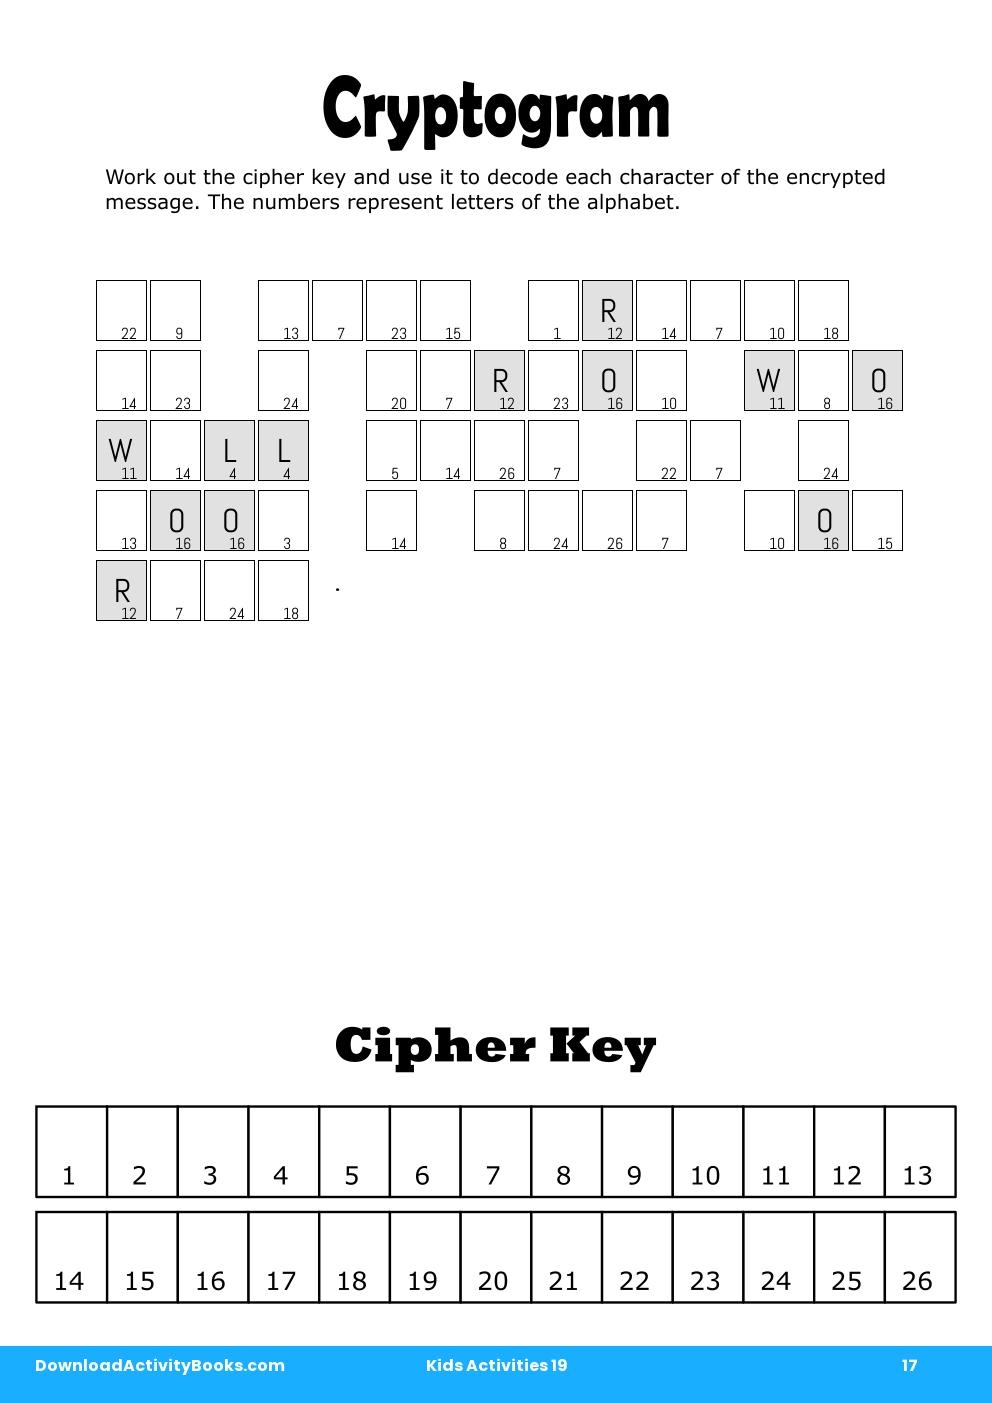 Cryptogram in Kids Activities 19